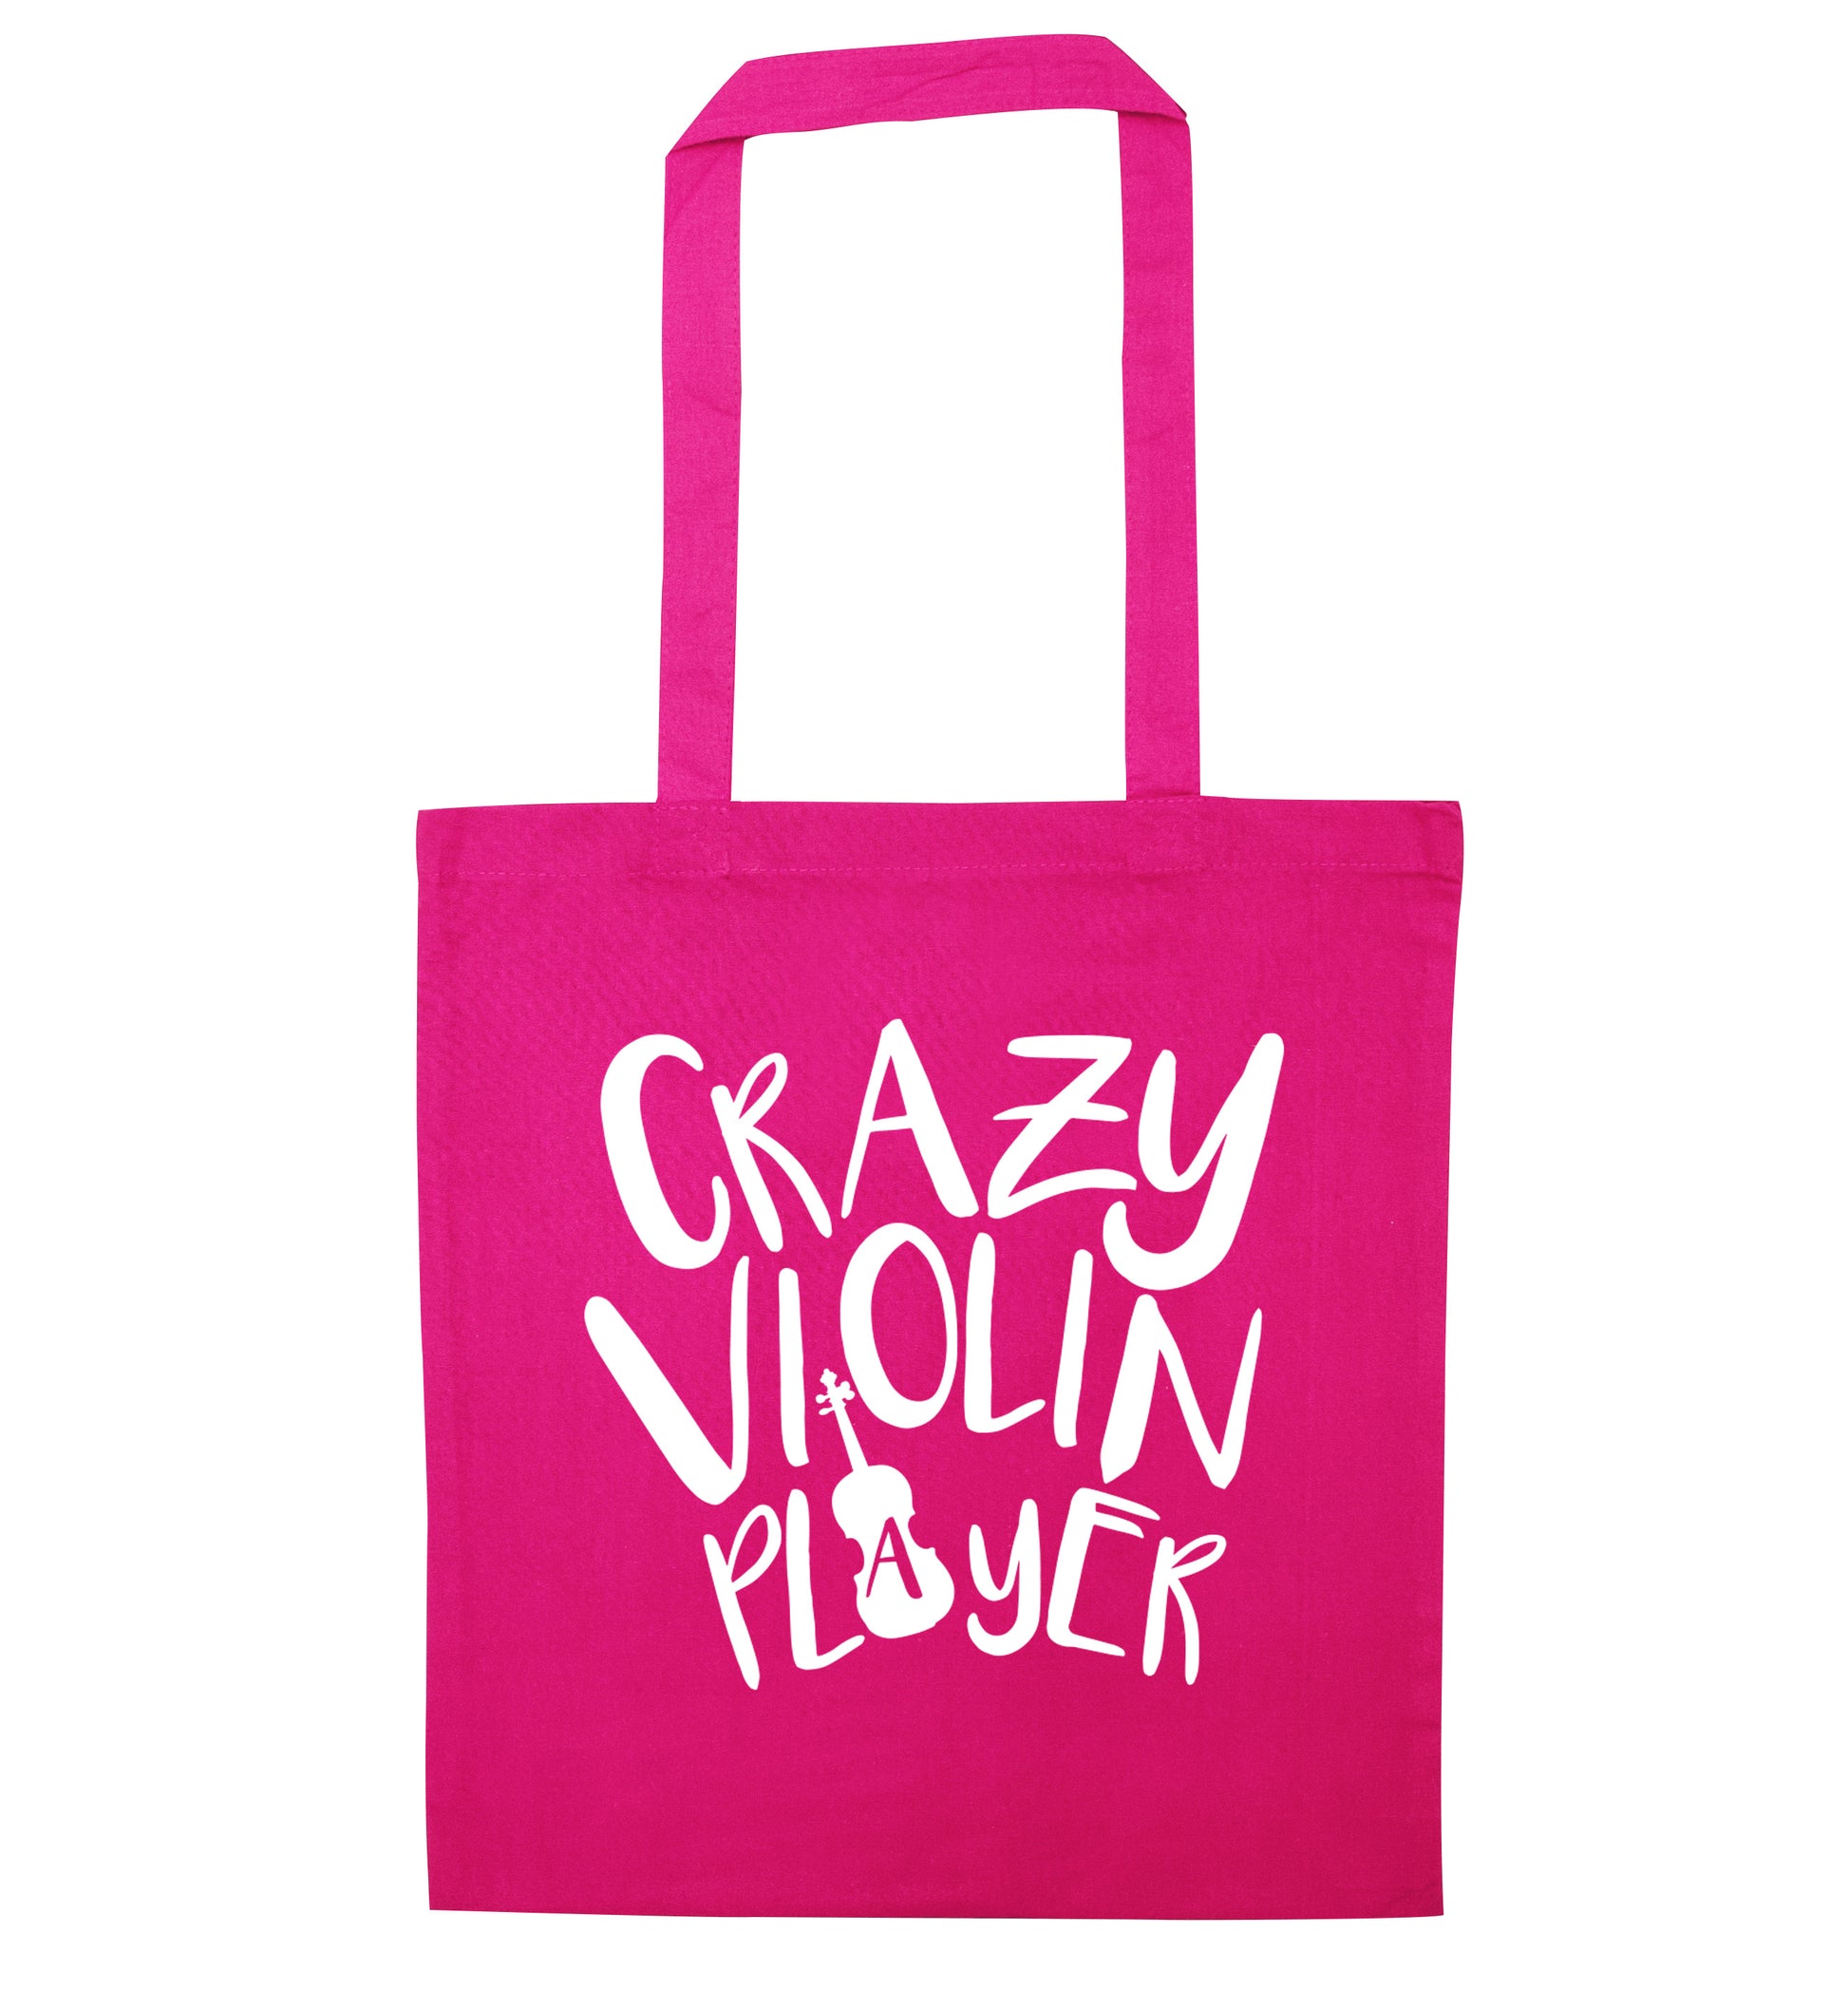 Crazy Violin Player pink tote bag